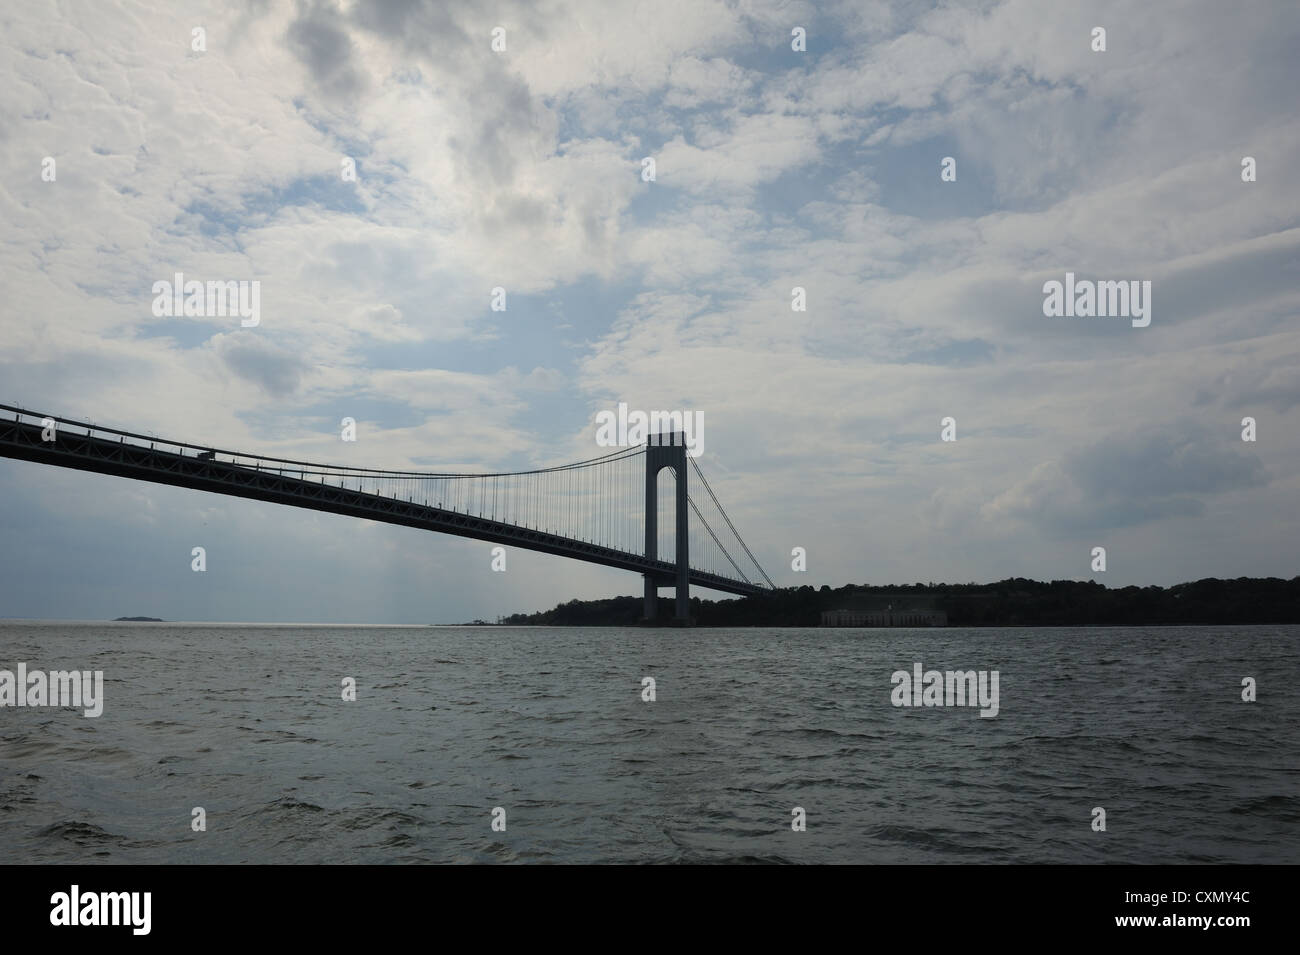 Il Verrazano Narrows Bridge separa la parte superiore del porto di New York da parte inferiore e l'Oceano Atlantico. Foto Stock